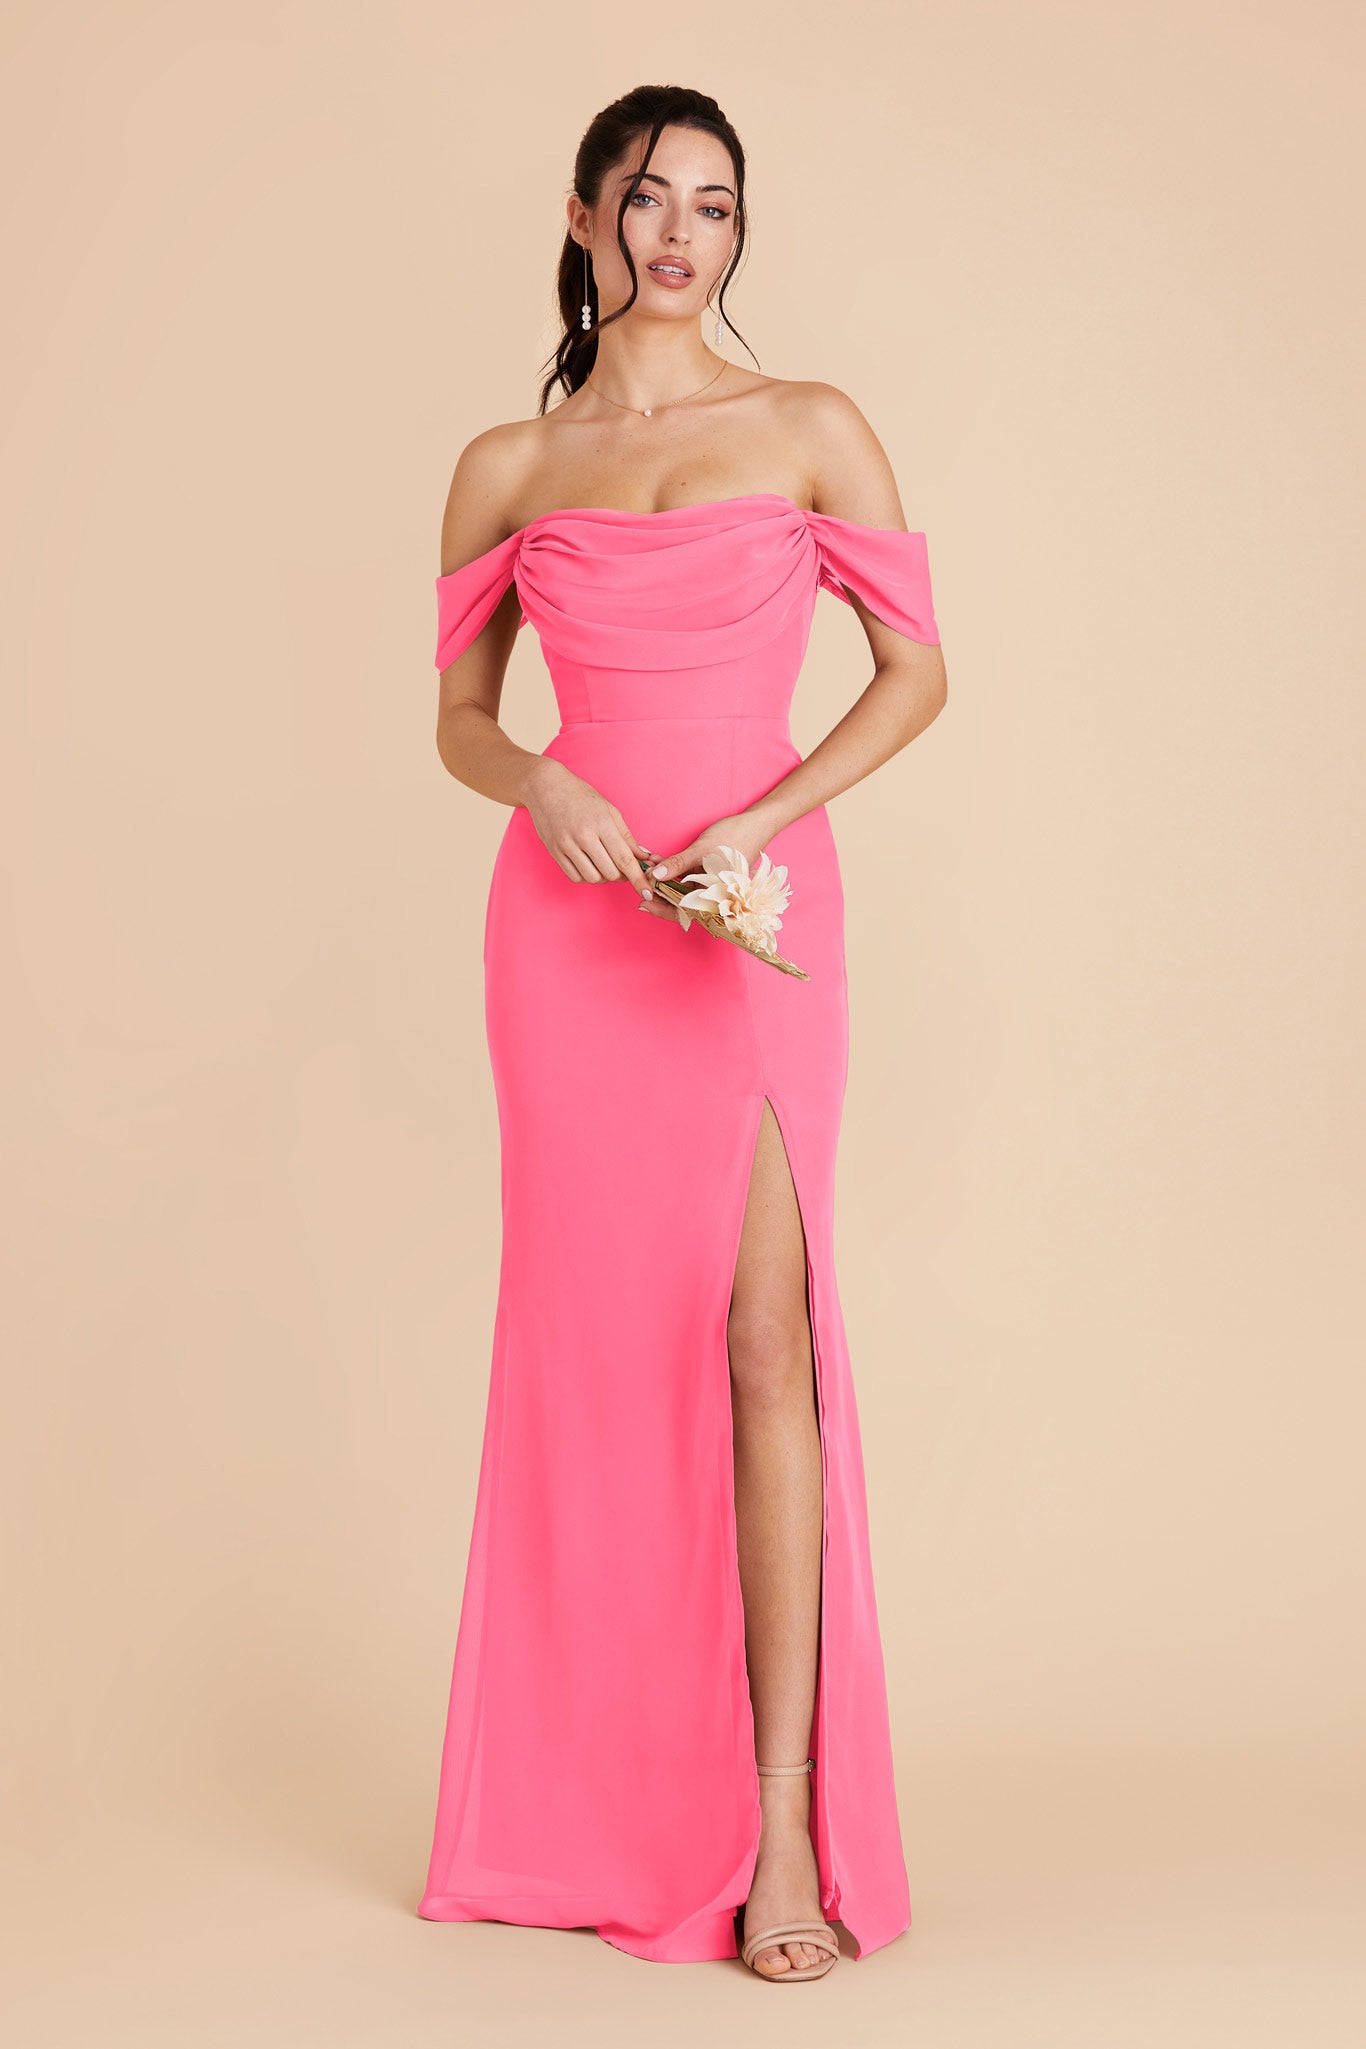 Bon Bon Pink Mira Convertible Dress by Birdy Grey